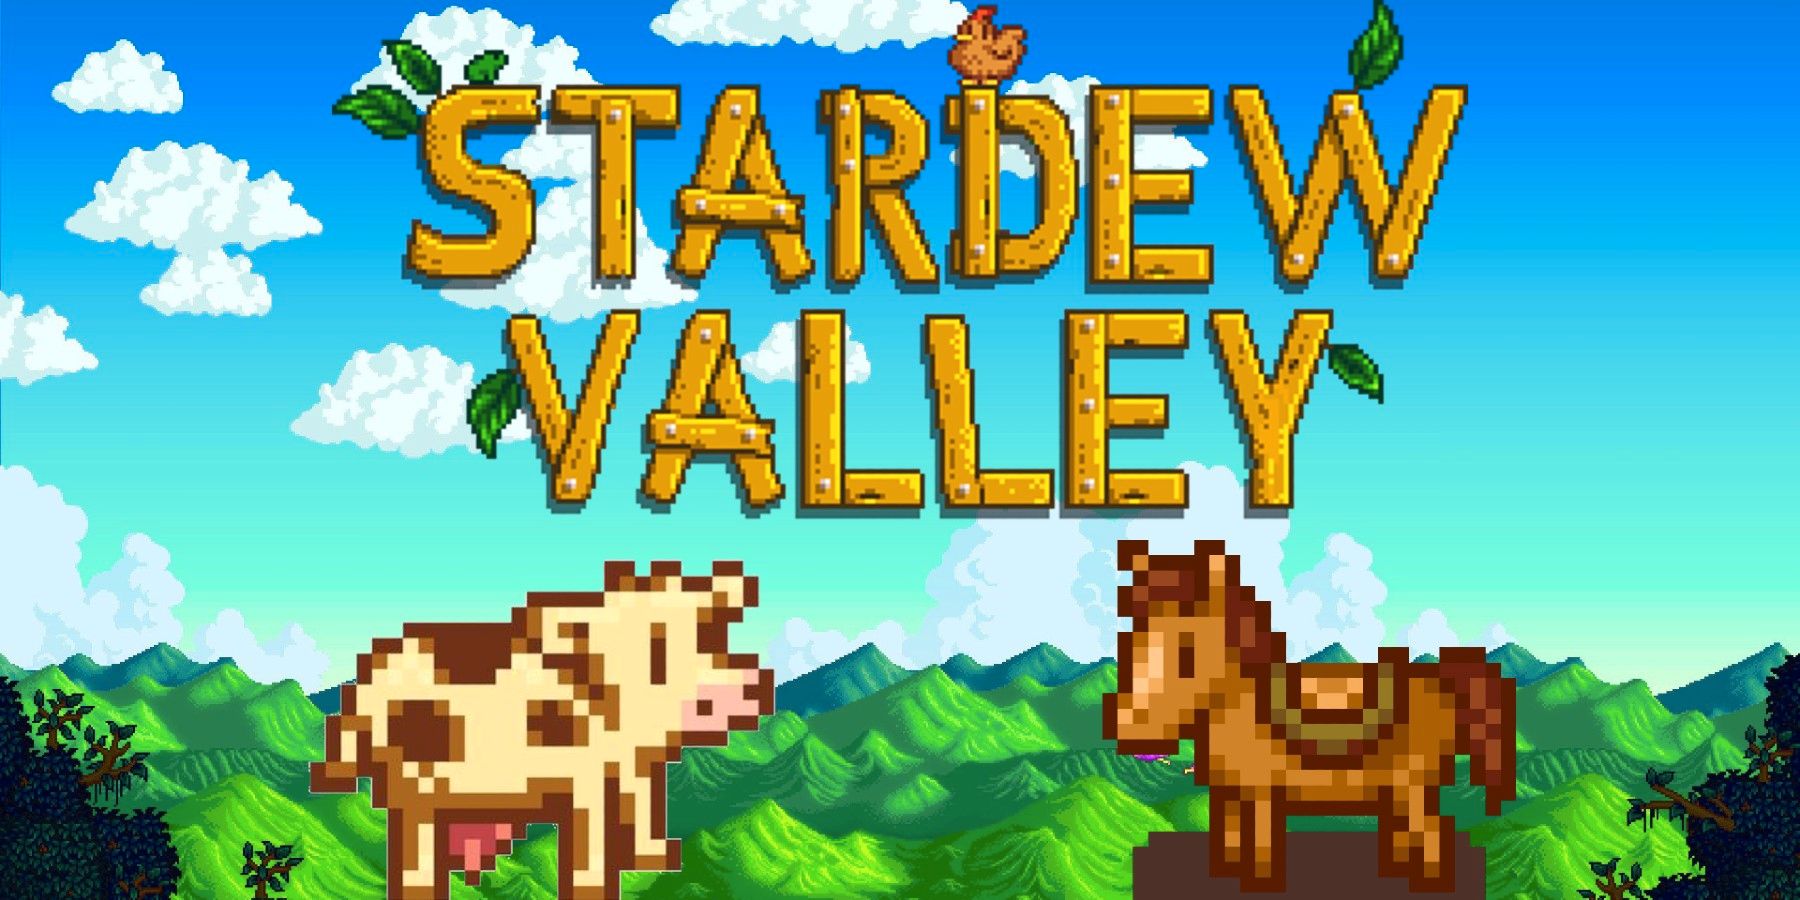 Il clip salutare di Stardew Valley mostra il giocatore “Herding” il bestiame